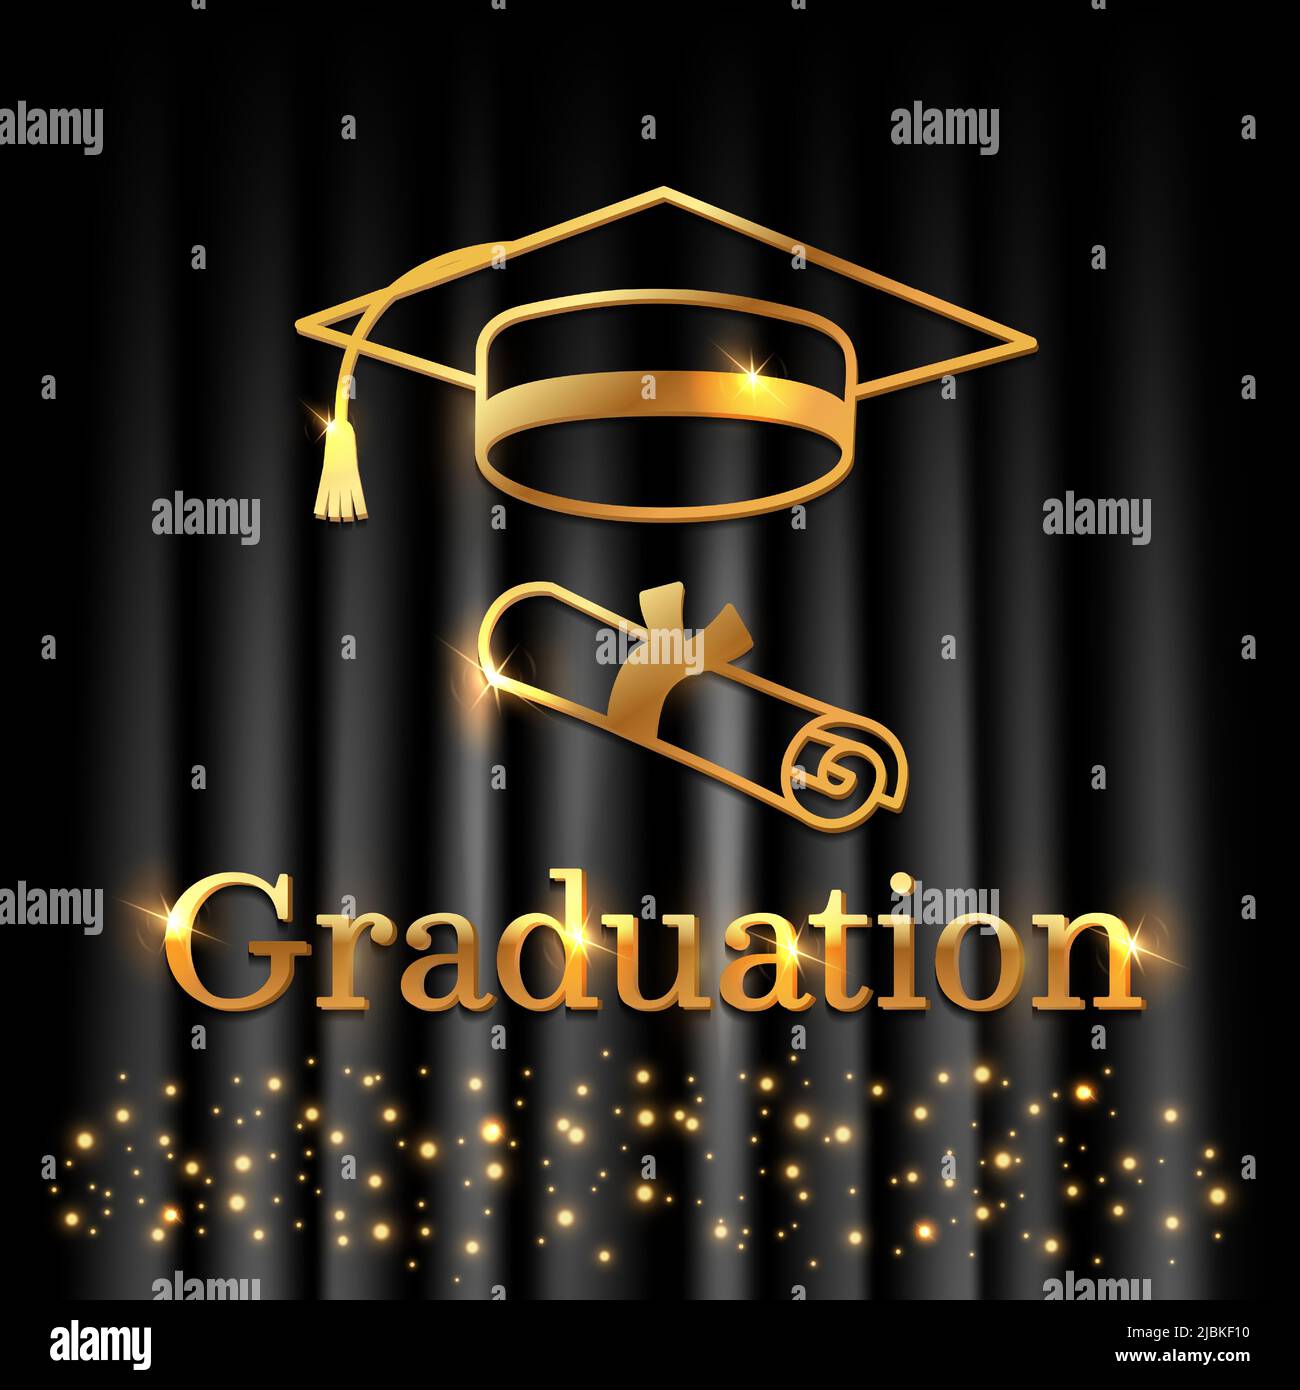 Herzlichen Glückwunsch zur Graduierung mit einer Inschrift in Gold auf schwarzem Hintergrund. Gratulatory glänzendes Poster mit goldenem Konfetti, Hut und Umriss Stock Vektor